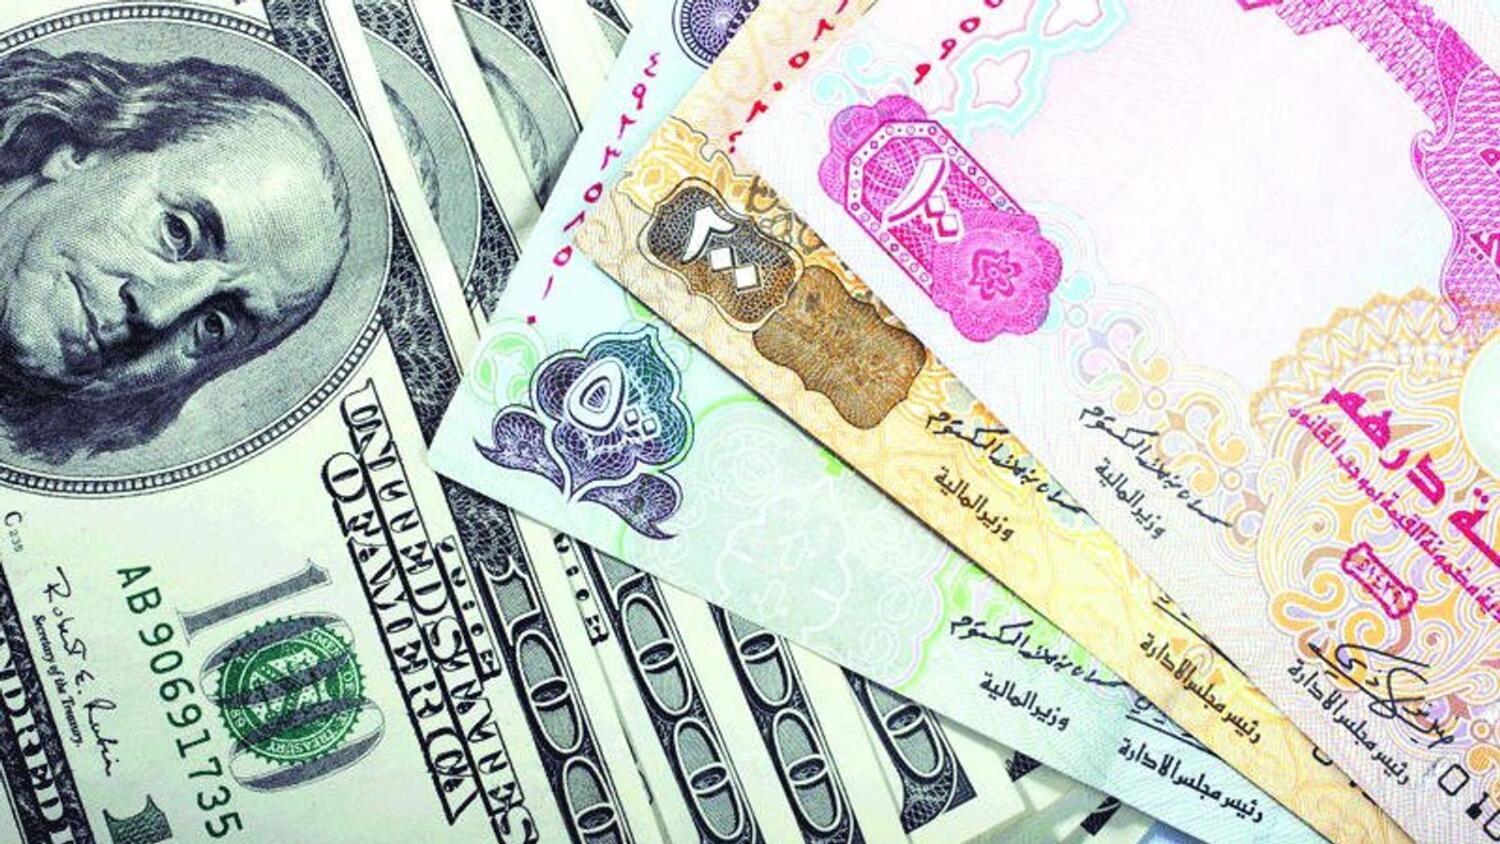 Менять доллары на дирхамы. Купюры Дубай. Дирхамы в доллары. Валюта Дубая дирхамы. Деньги арабских Эмиратов.